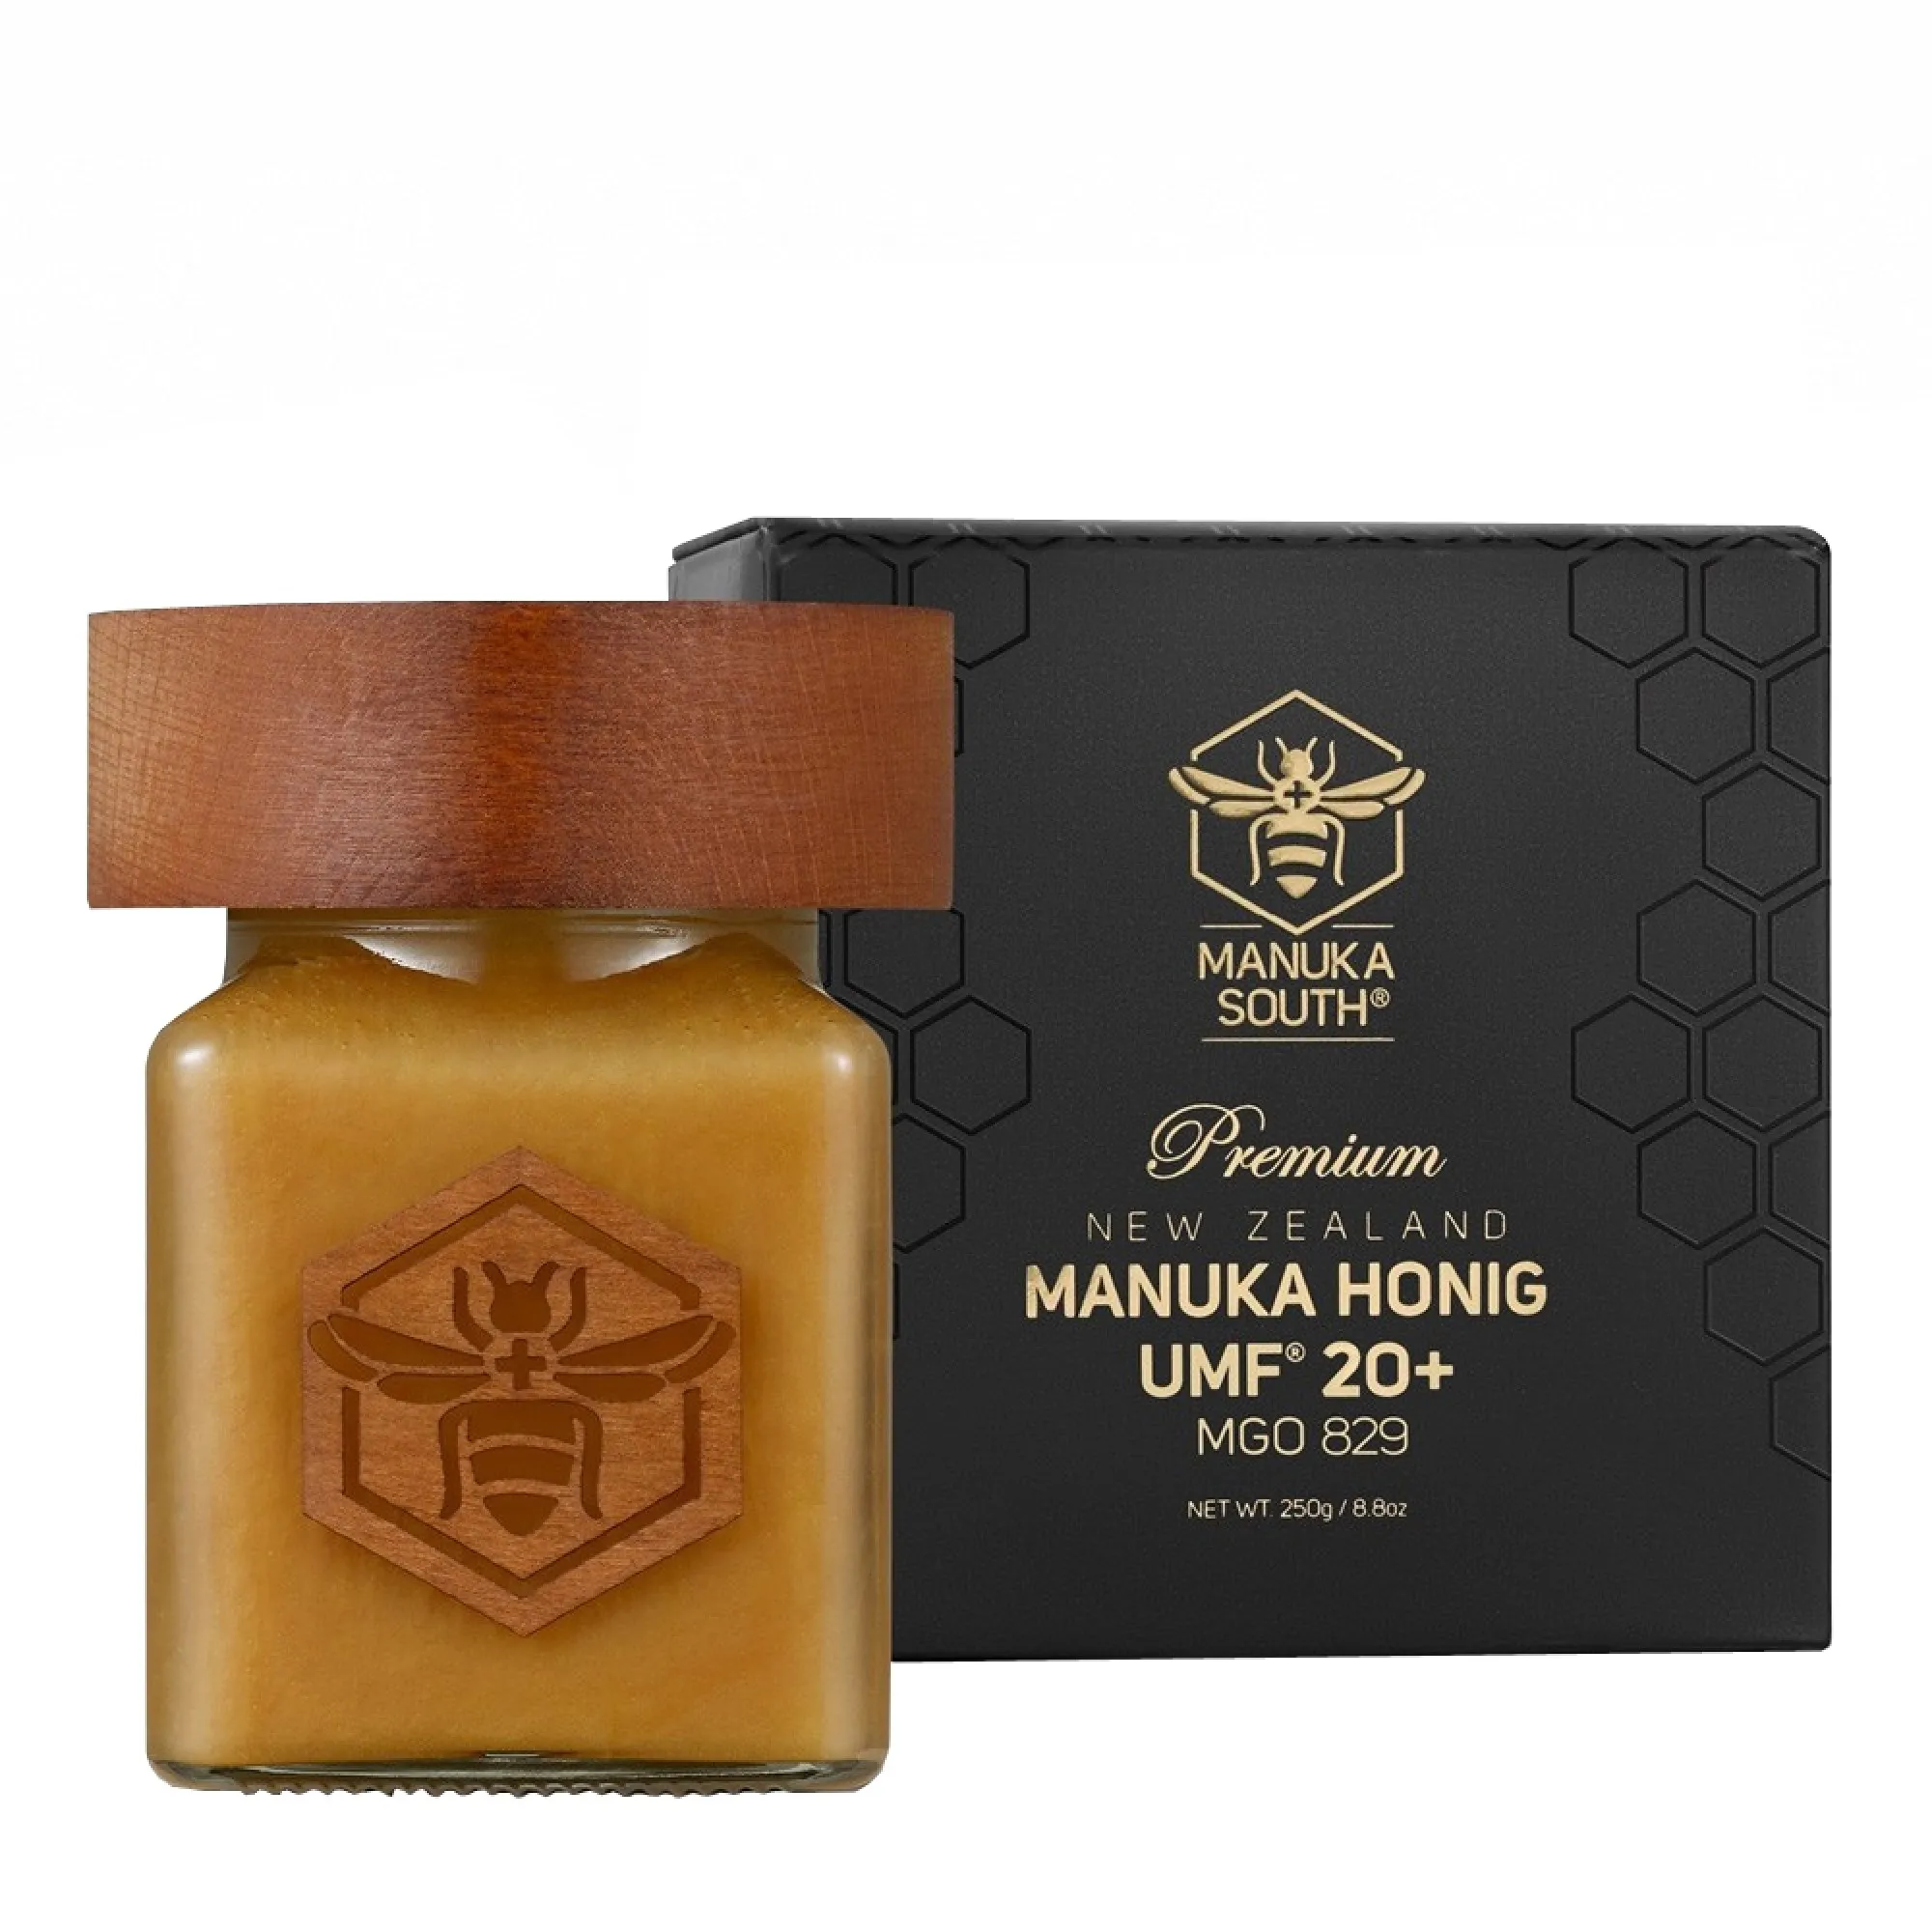 Miere de Manuka Premium Manuka South ®, UMF®20+(MGO 829+), 250g [0]